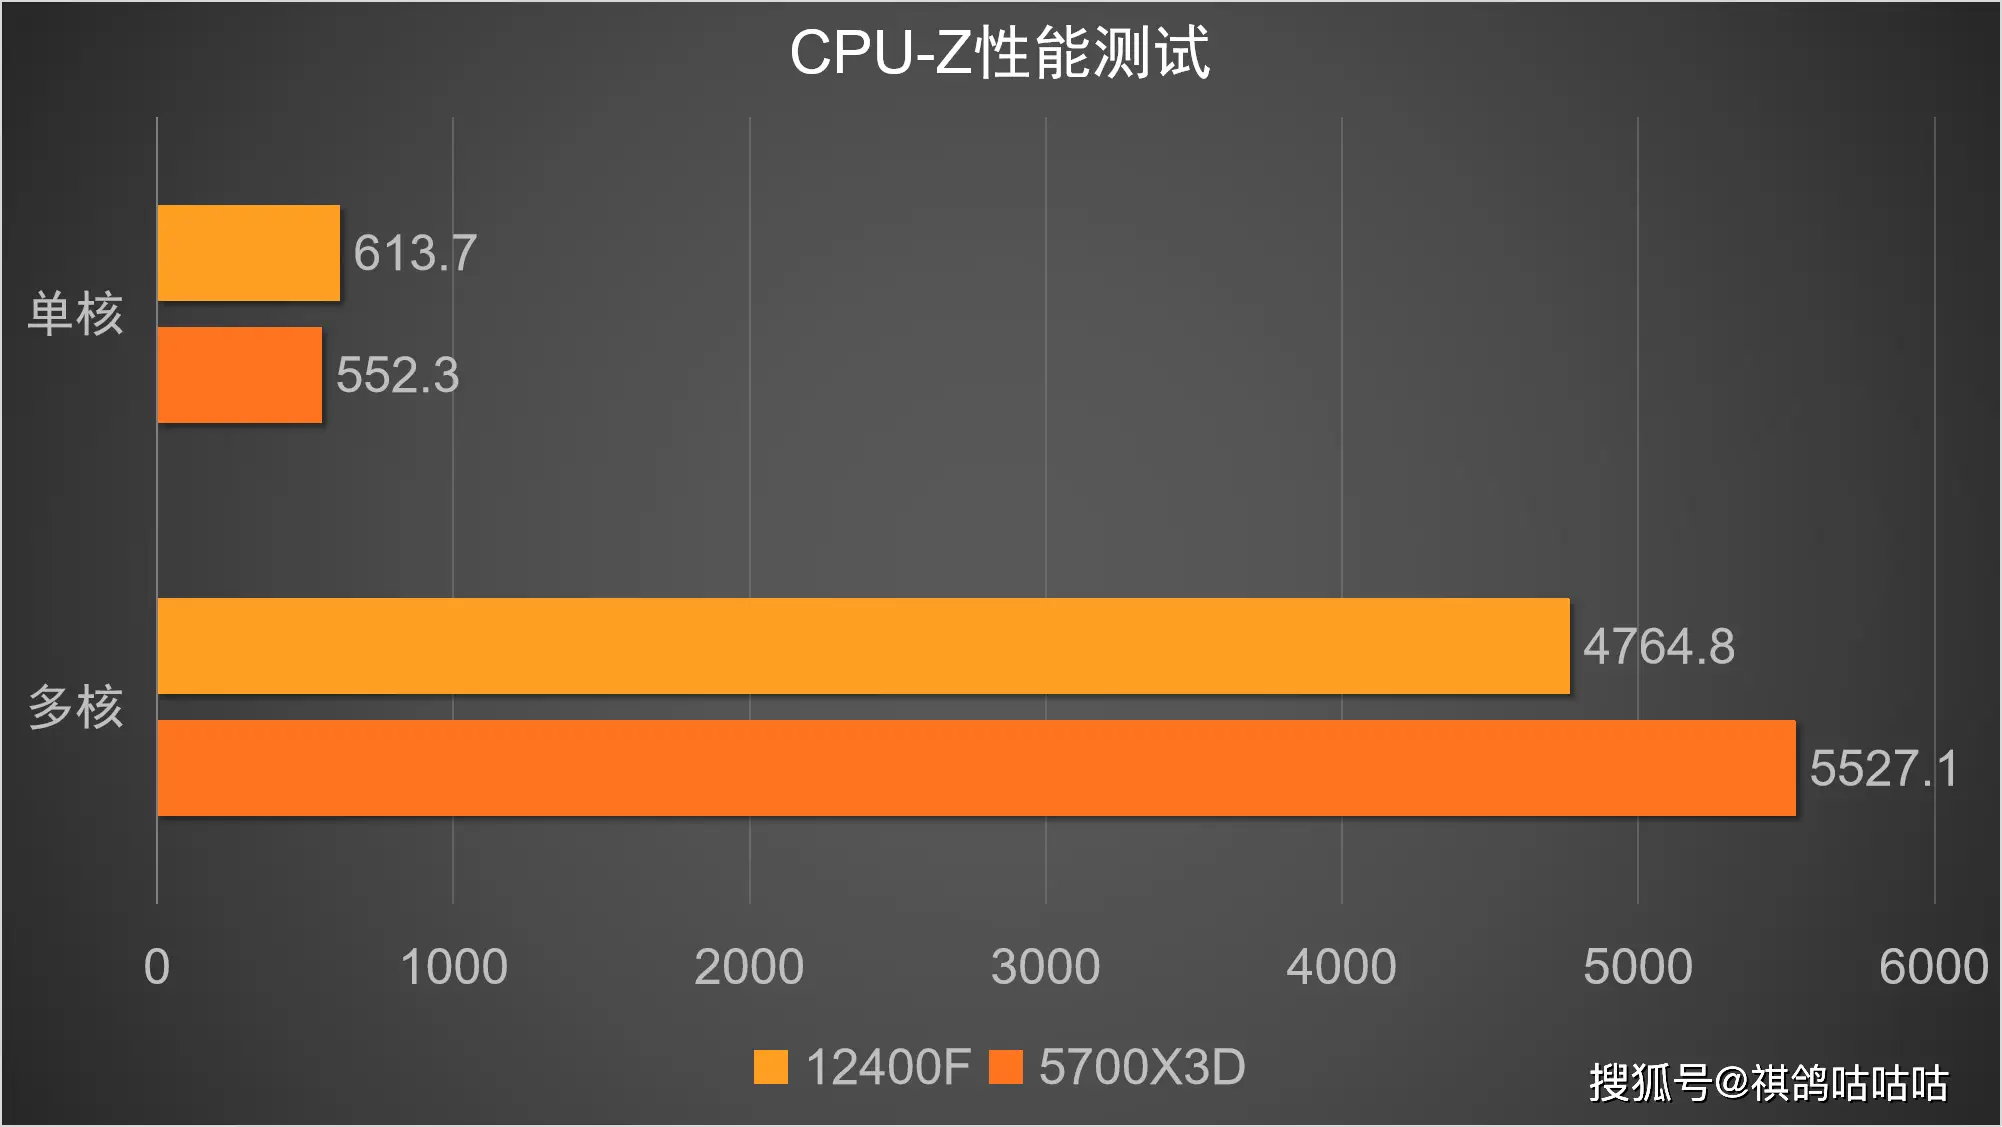 DDR4 内存能否插入 1151 针主板？兼容性问题至关重要  第1张